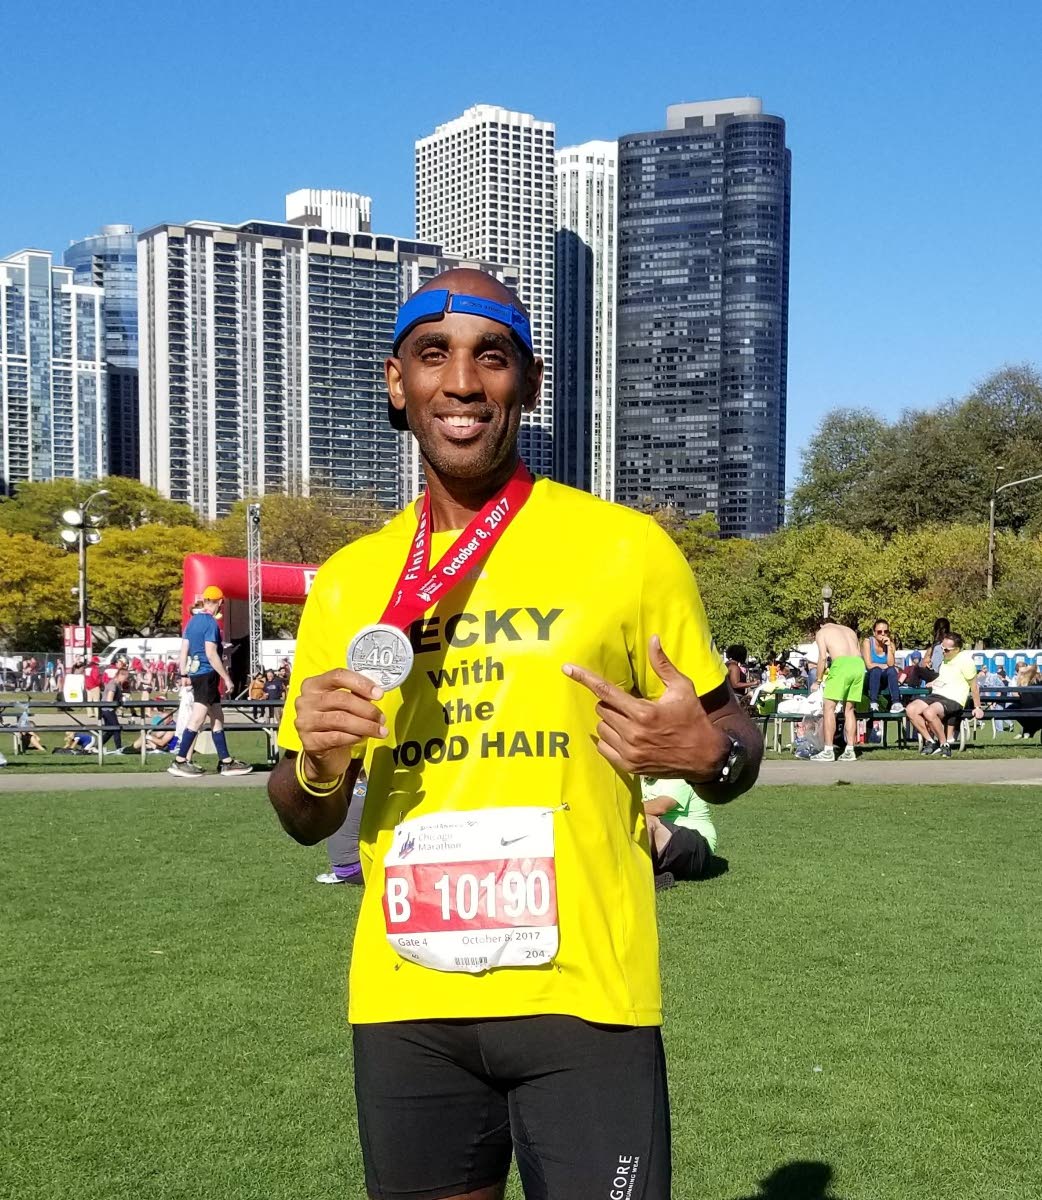 Trini qualifies for Boston Marathon